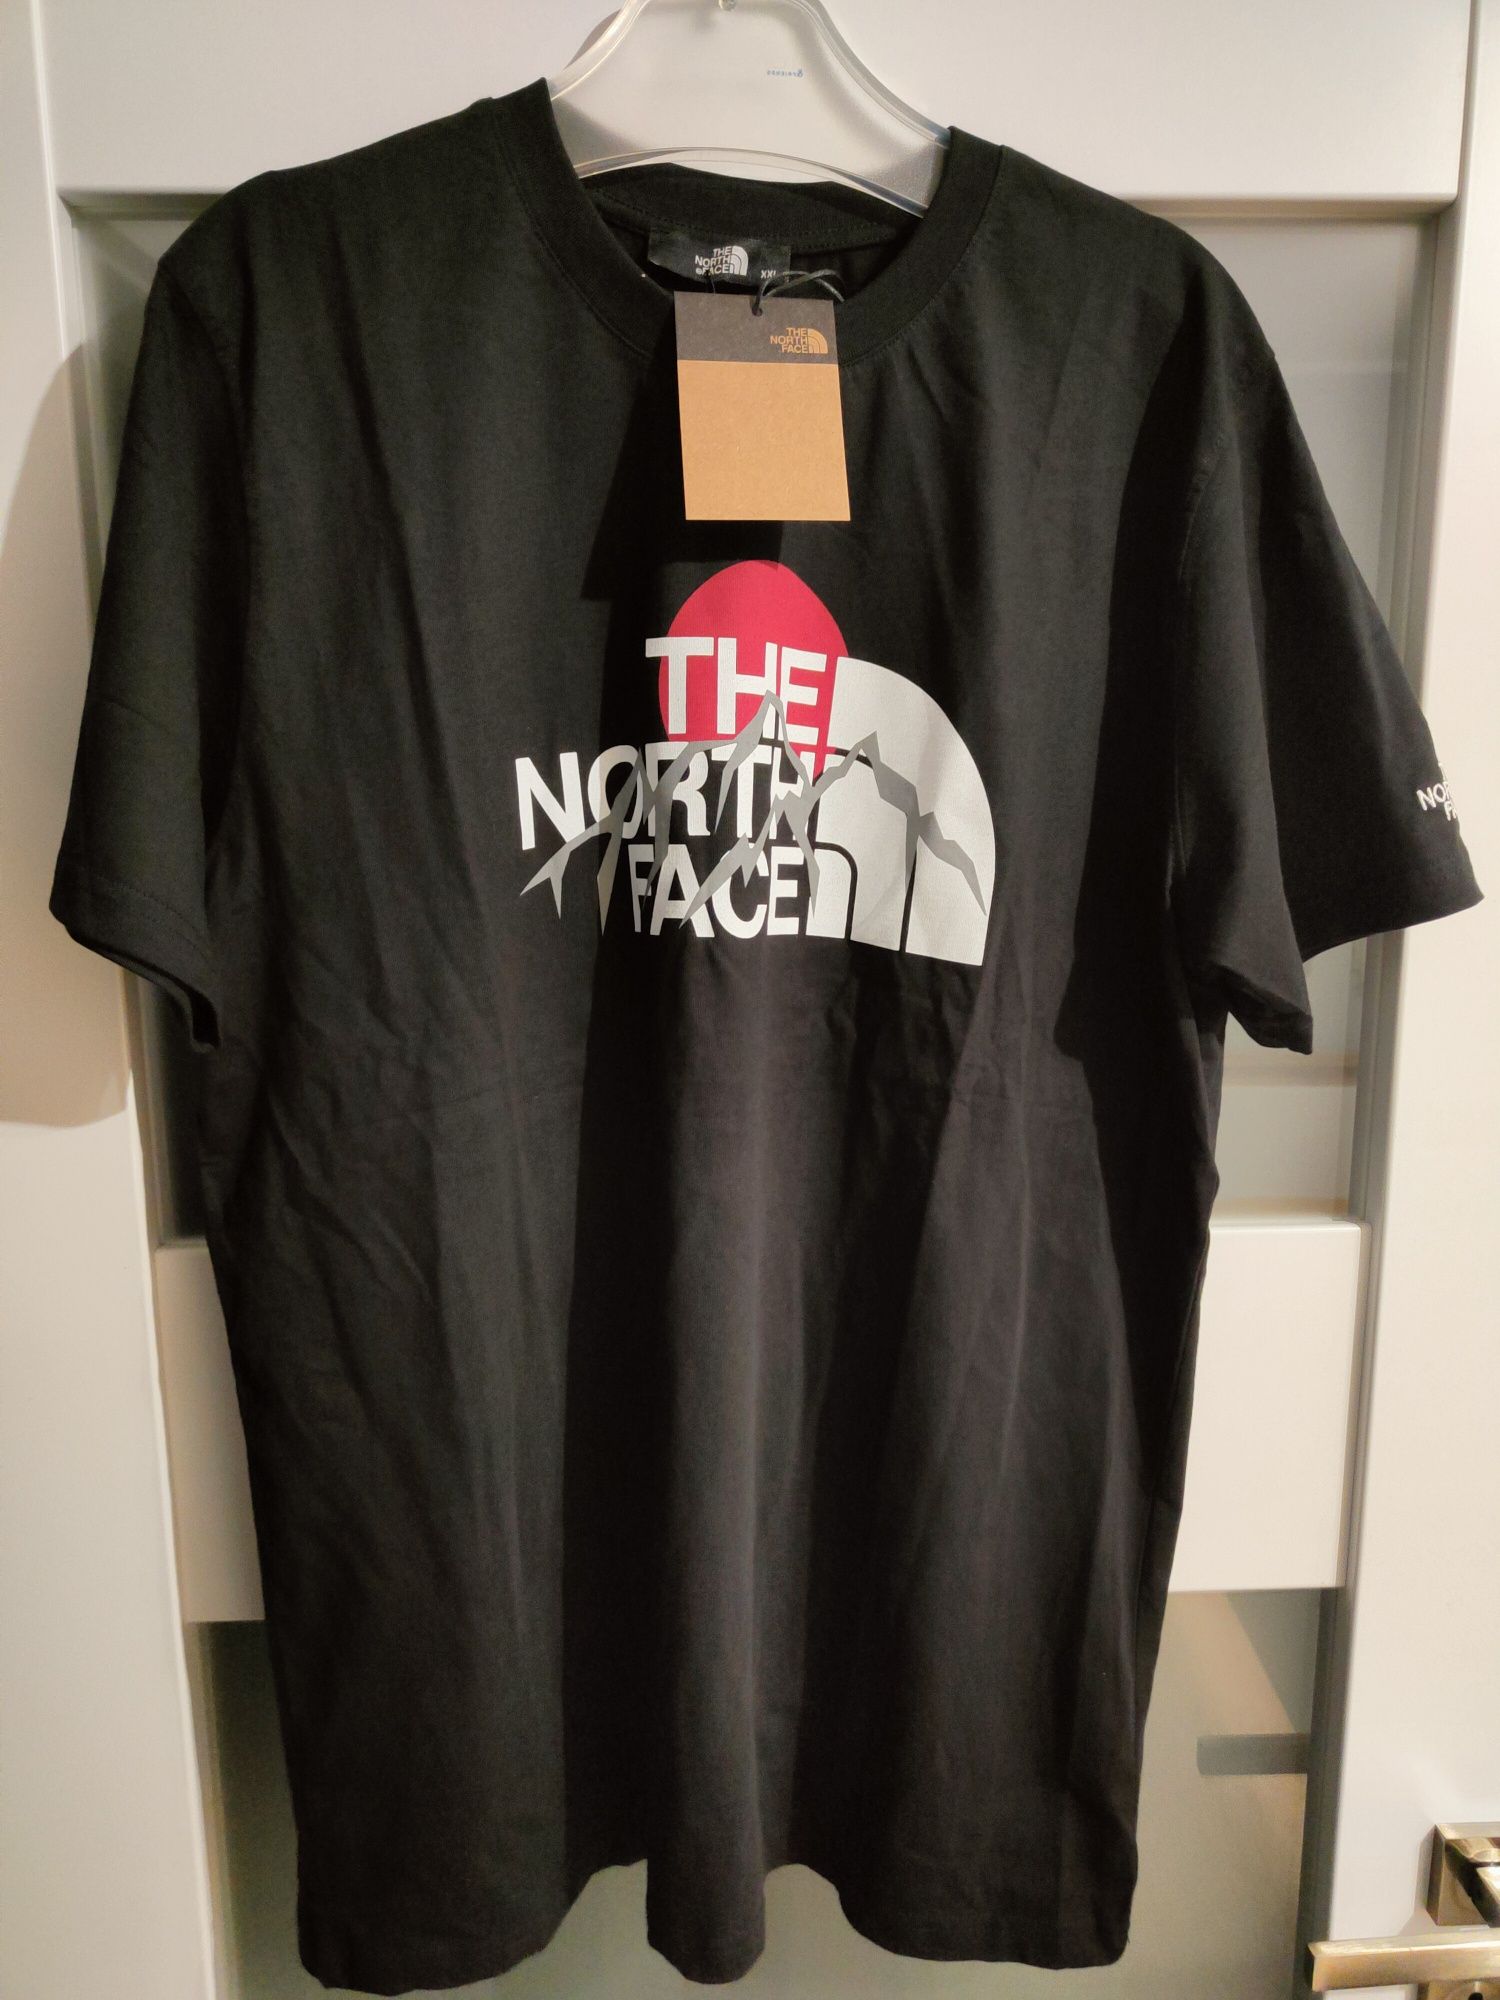 T-shirt męski THE NORTH FACE. Nowa XXL.